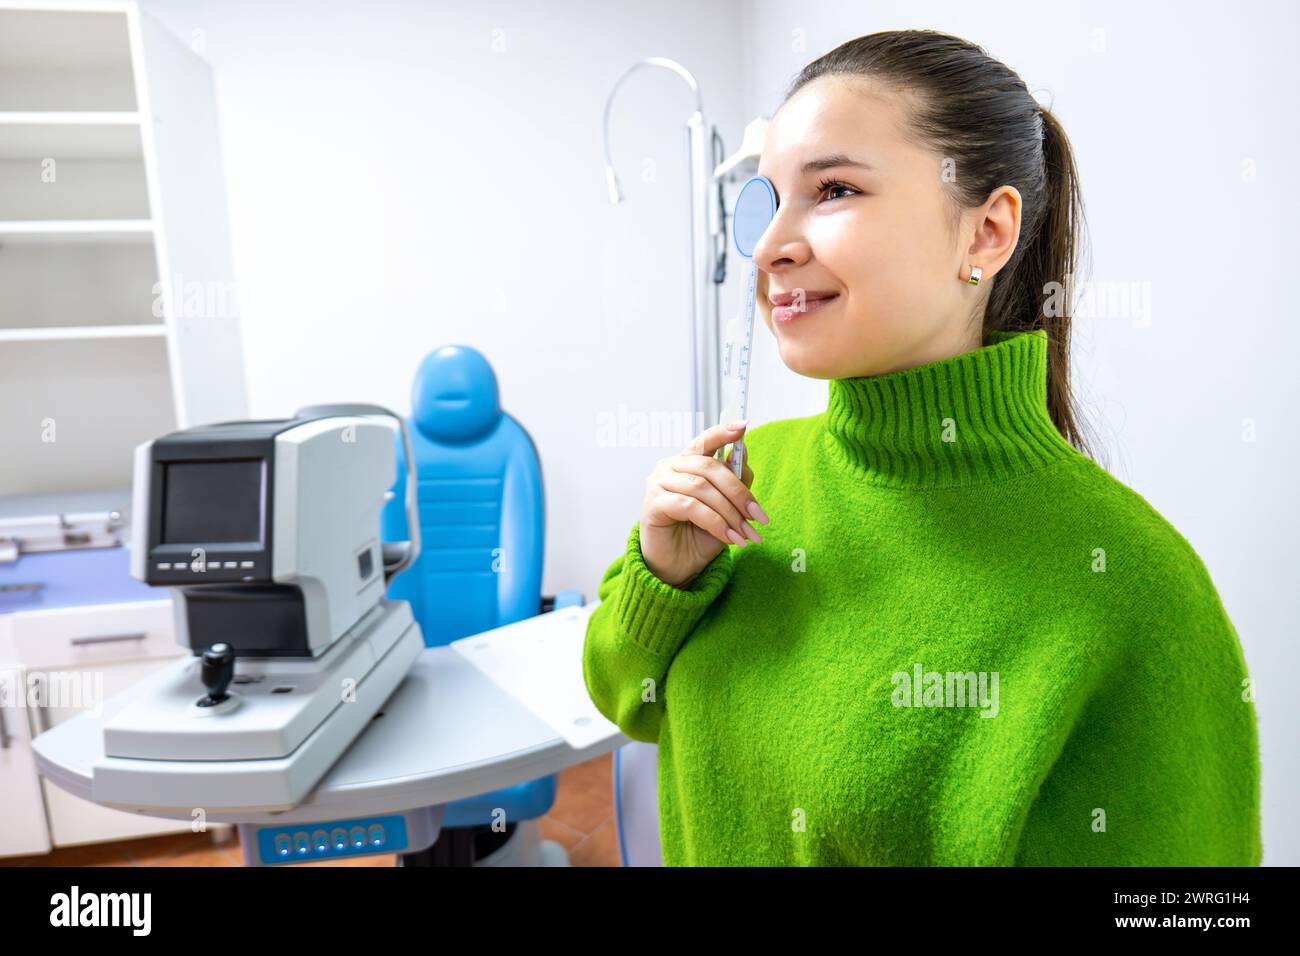 Une femme heureuse dans un pull vert se tient debout devant une machine d'examen de la vue, souriant tandis qu'elle fait des gestes vers l'équipement de bureau sur le bureau Banque D'Images